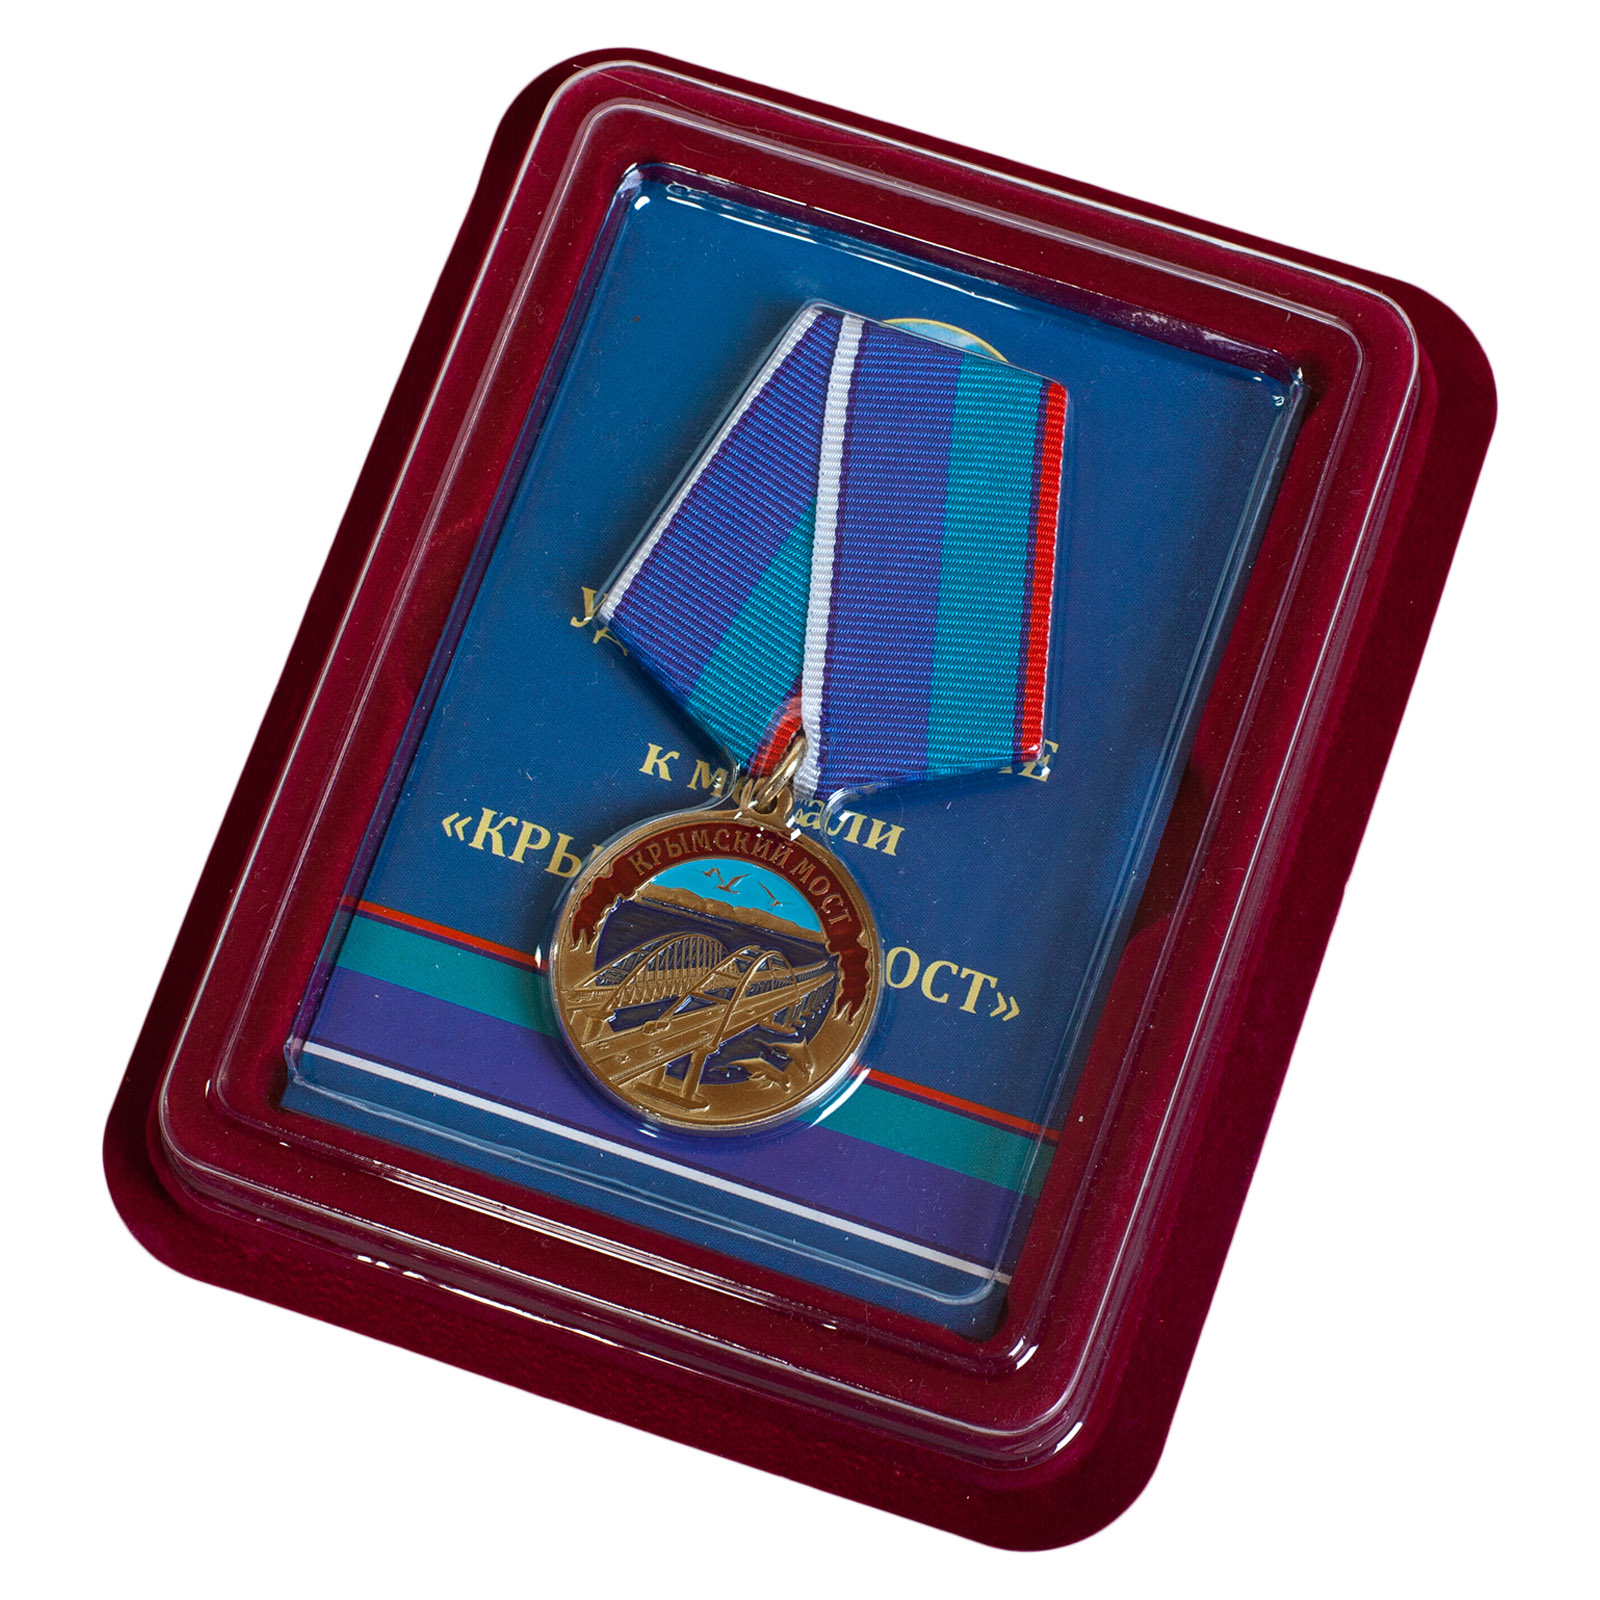 Купить памятную медаль Крымский мост с доставкой в ваш город